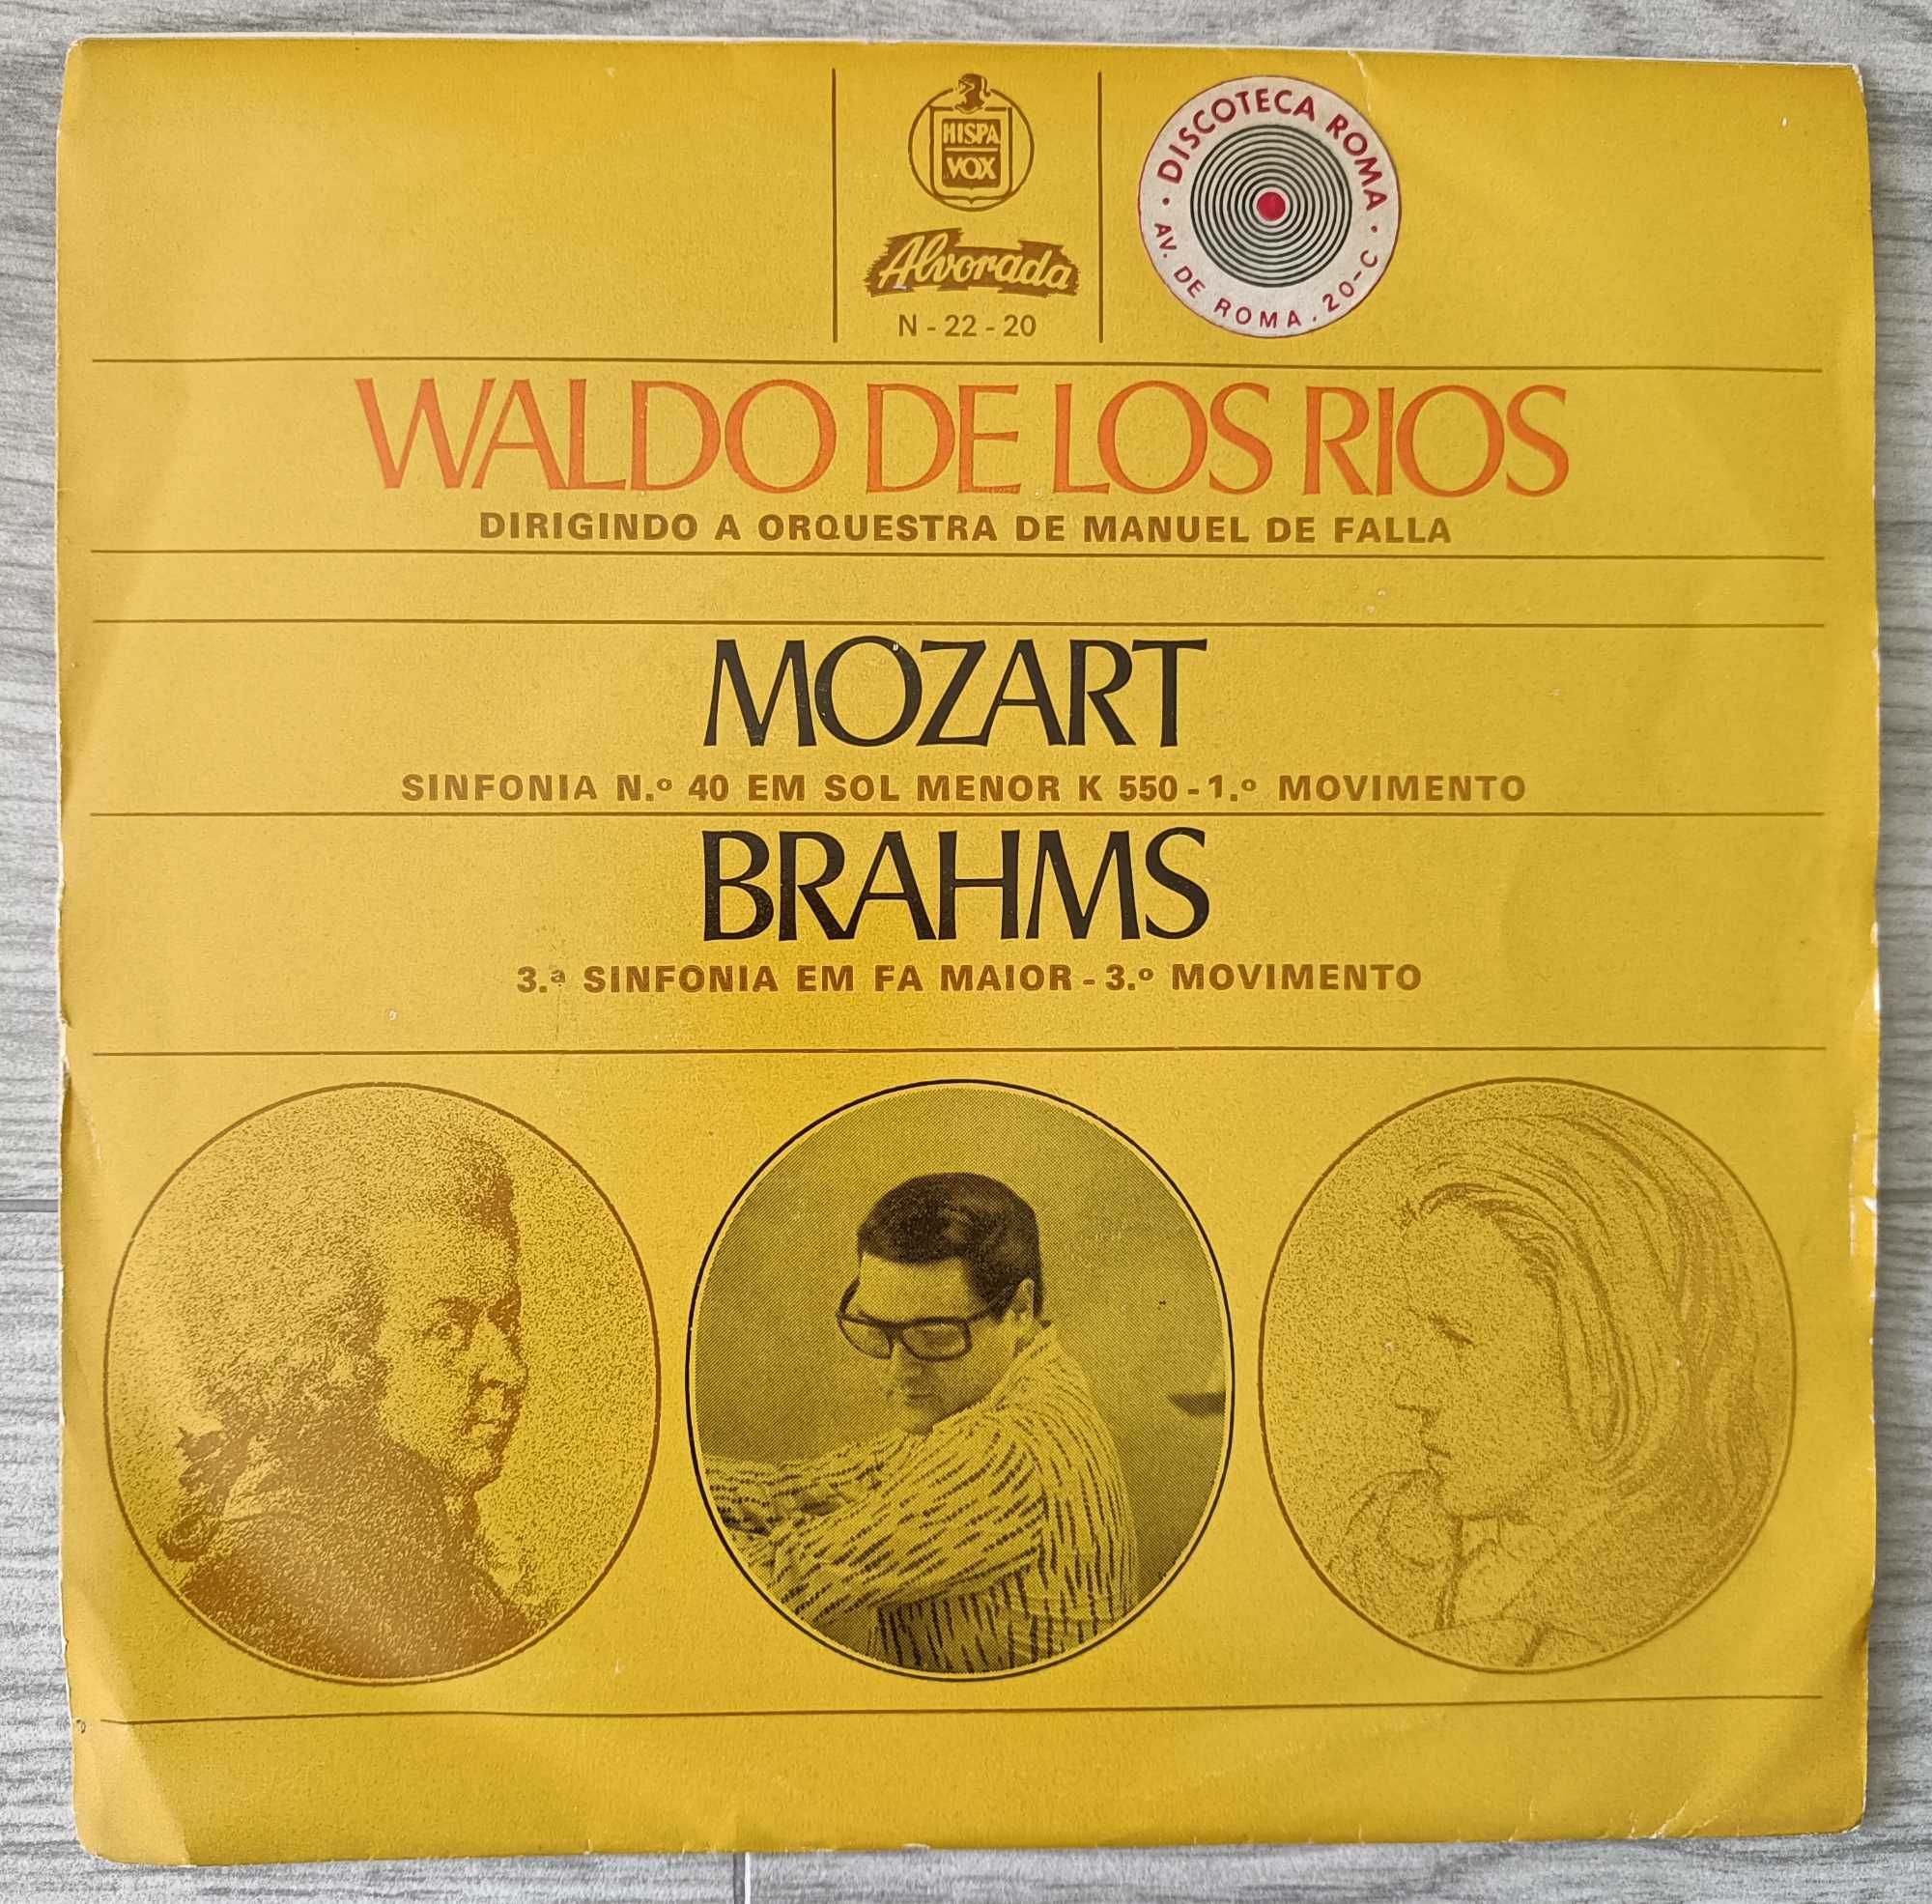 Waldo de los Rios - Mozart/Brahms - 7''